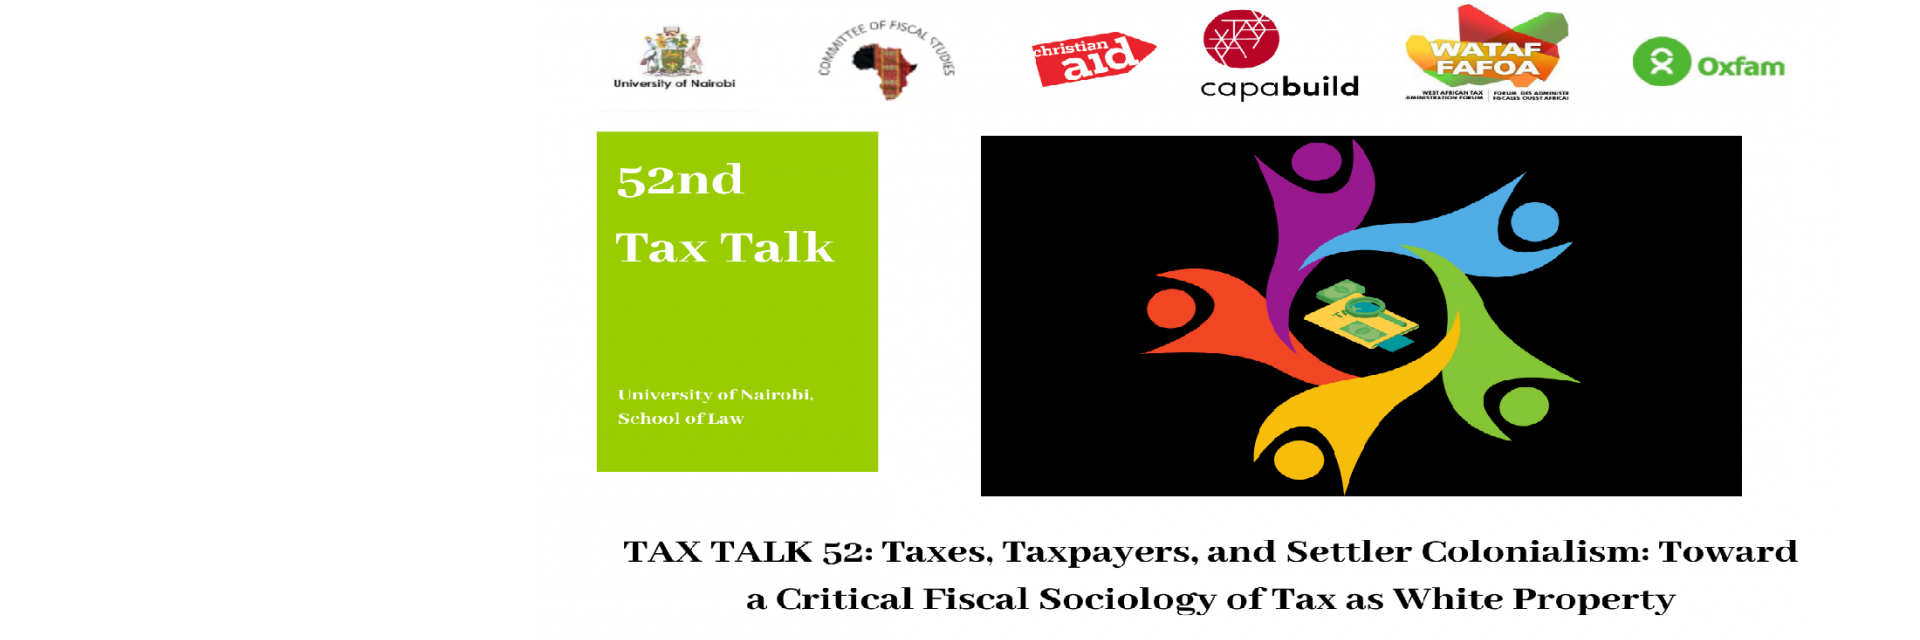 Tax Talk 52 Poster